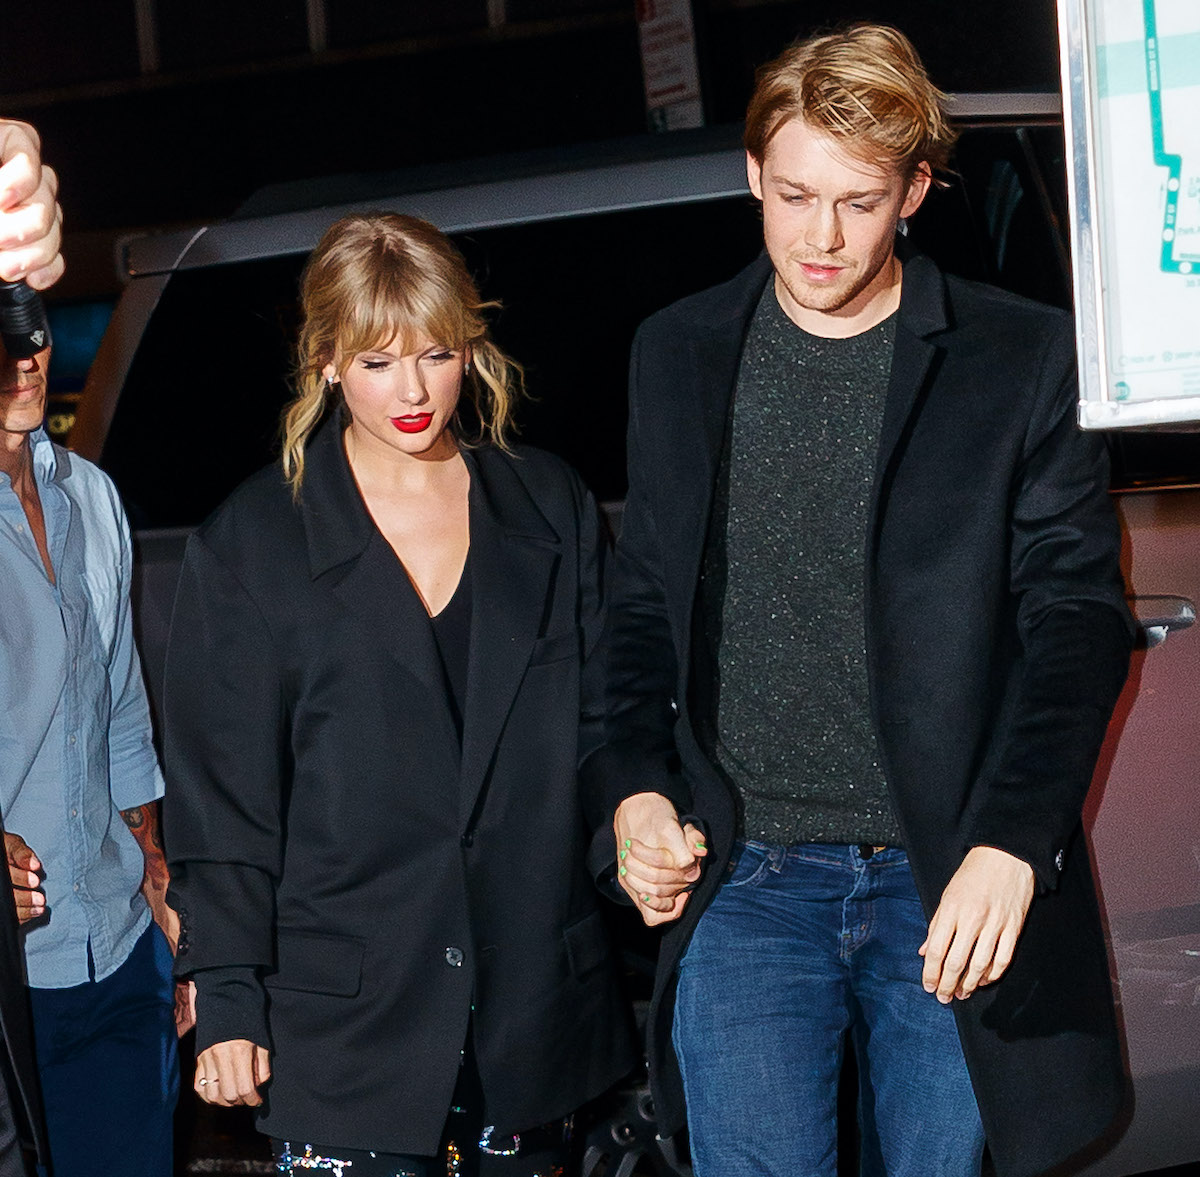 Taylor Swift Destroys Her Boyfriend, Joe Alwyn, in Terms of Net Worth